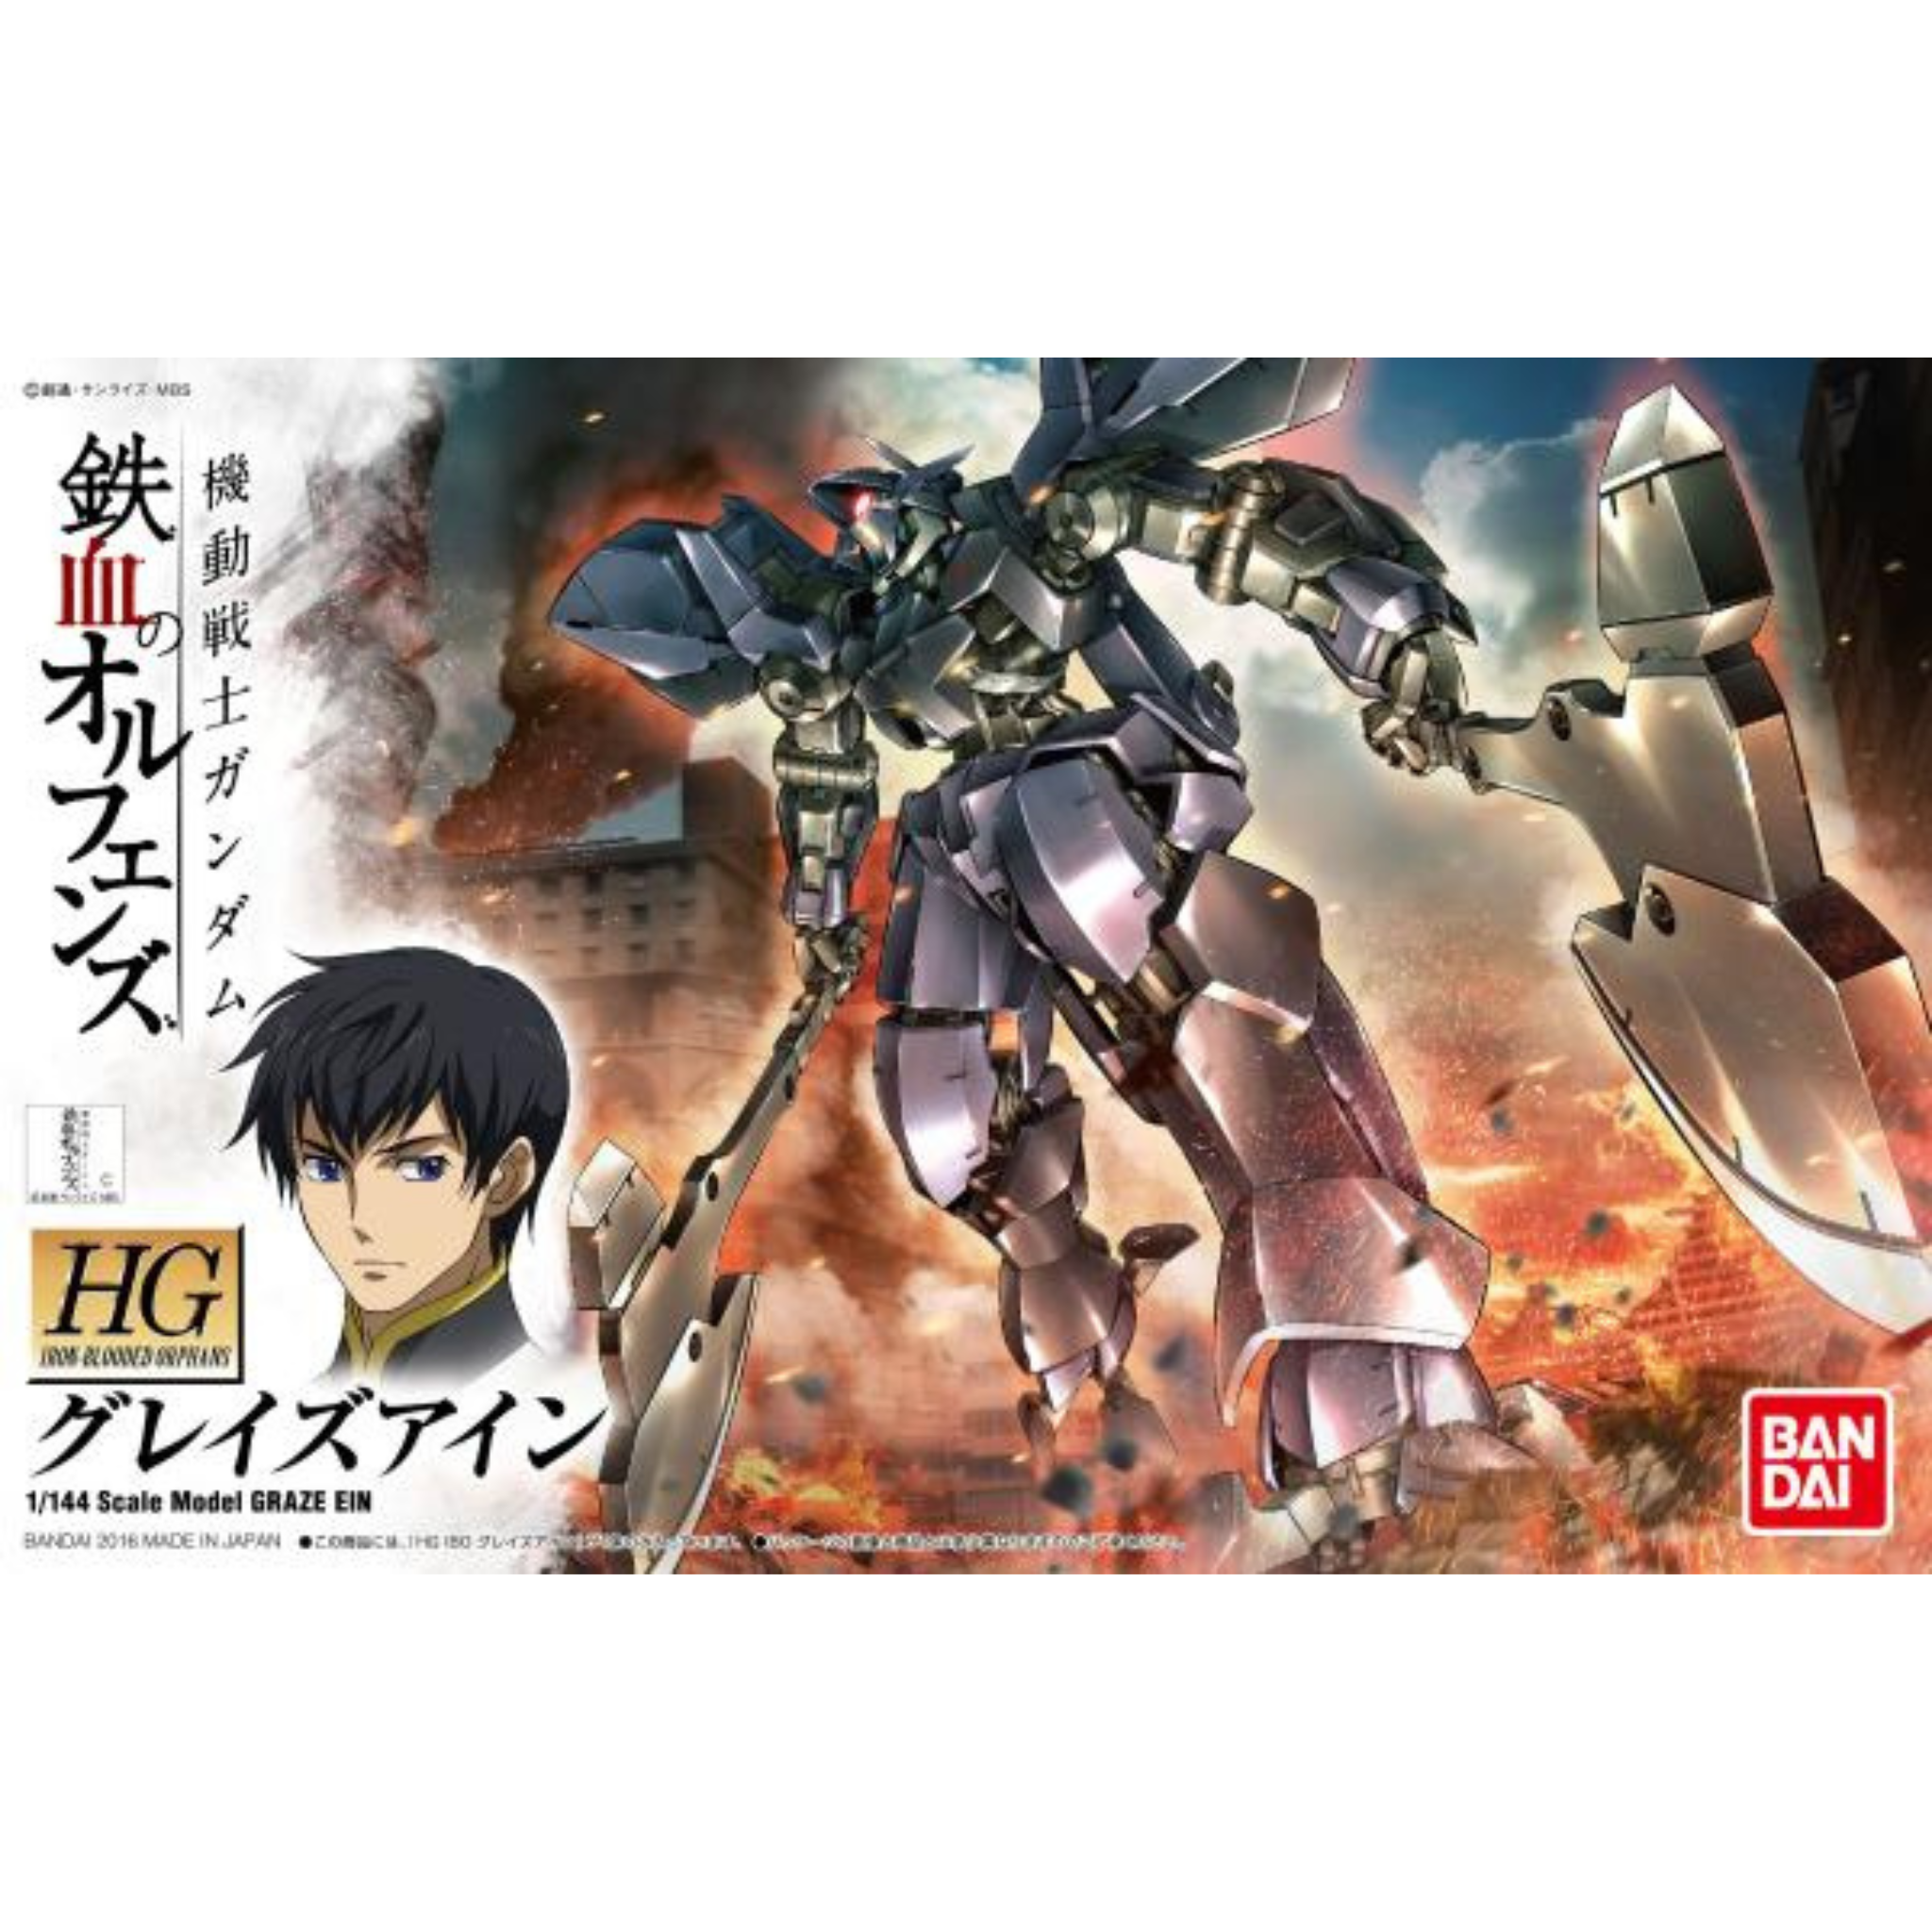 HG 1/144 Iron-Blooded Orphans Gundam #18 Graze Ein #5058171 by Bandai